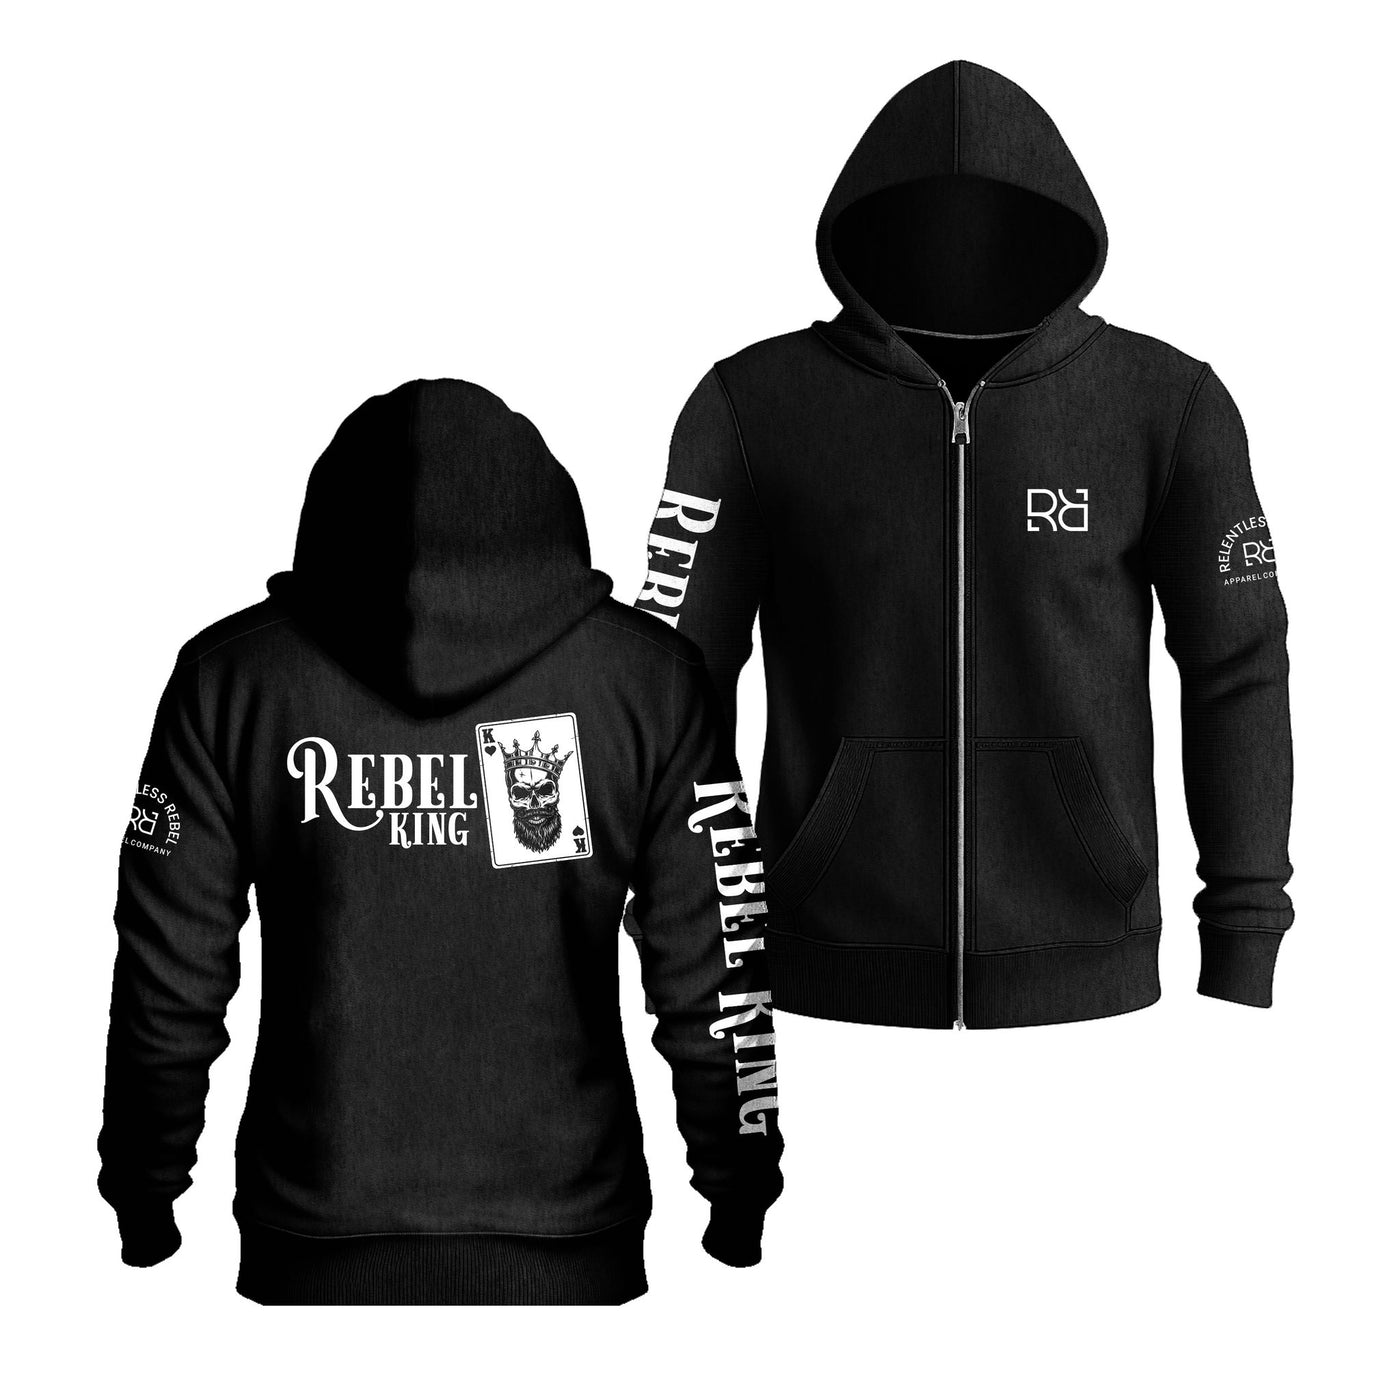 Solid Black Rebel King Sleeve & Back Design Zip Up Hoodie